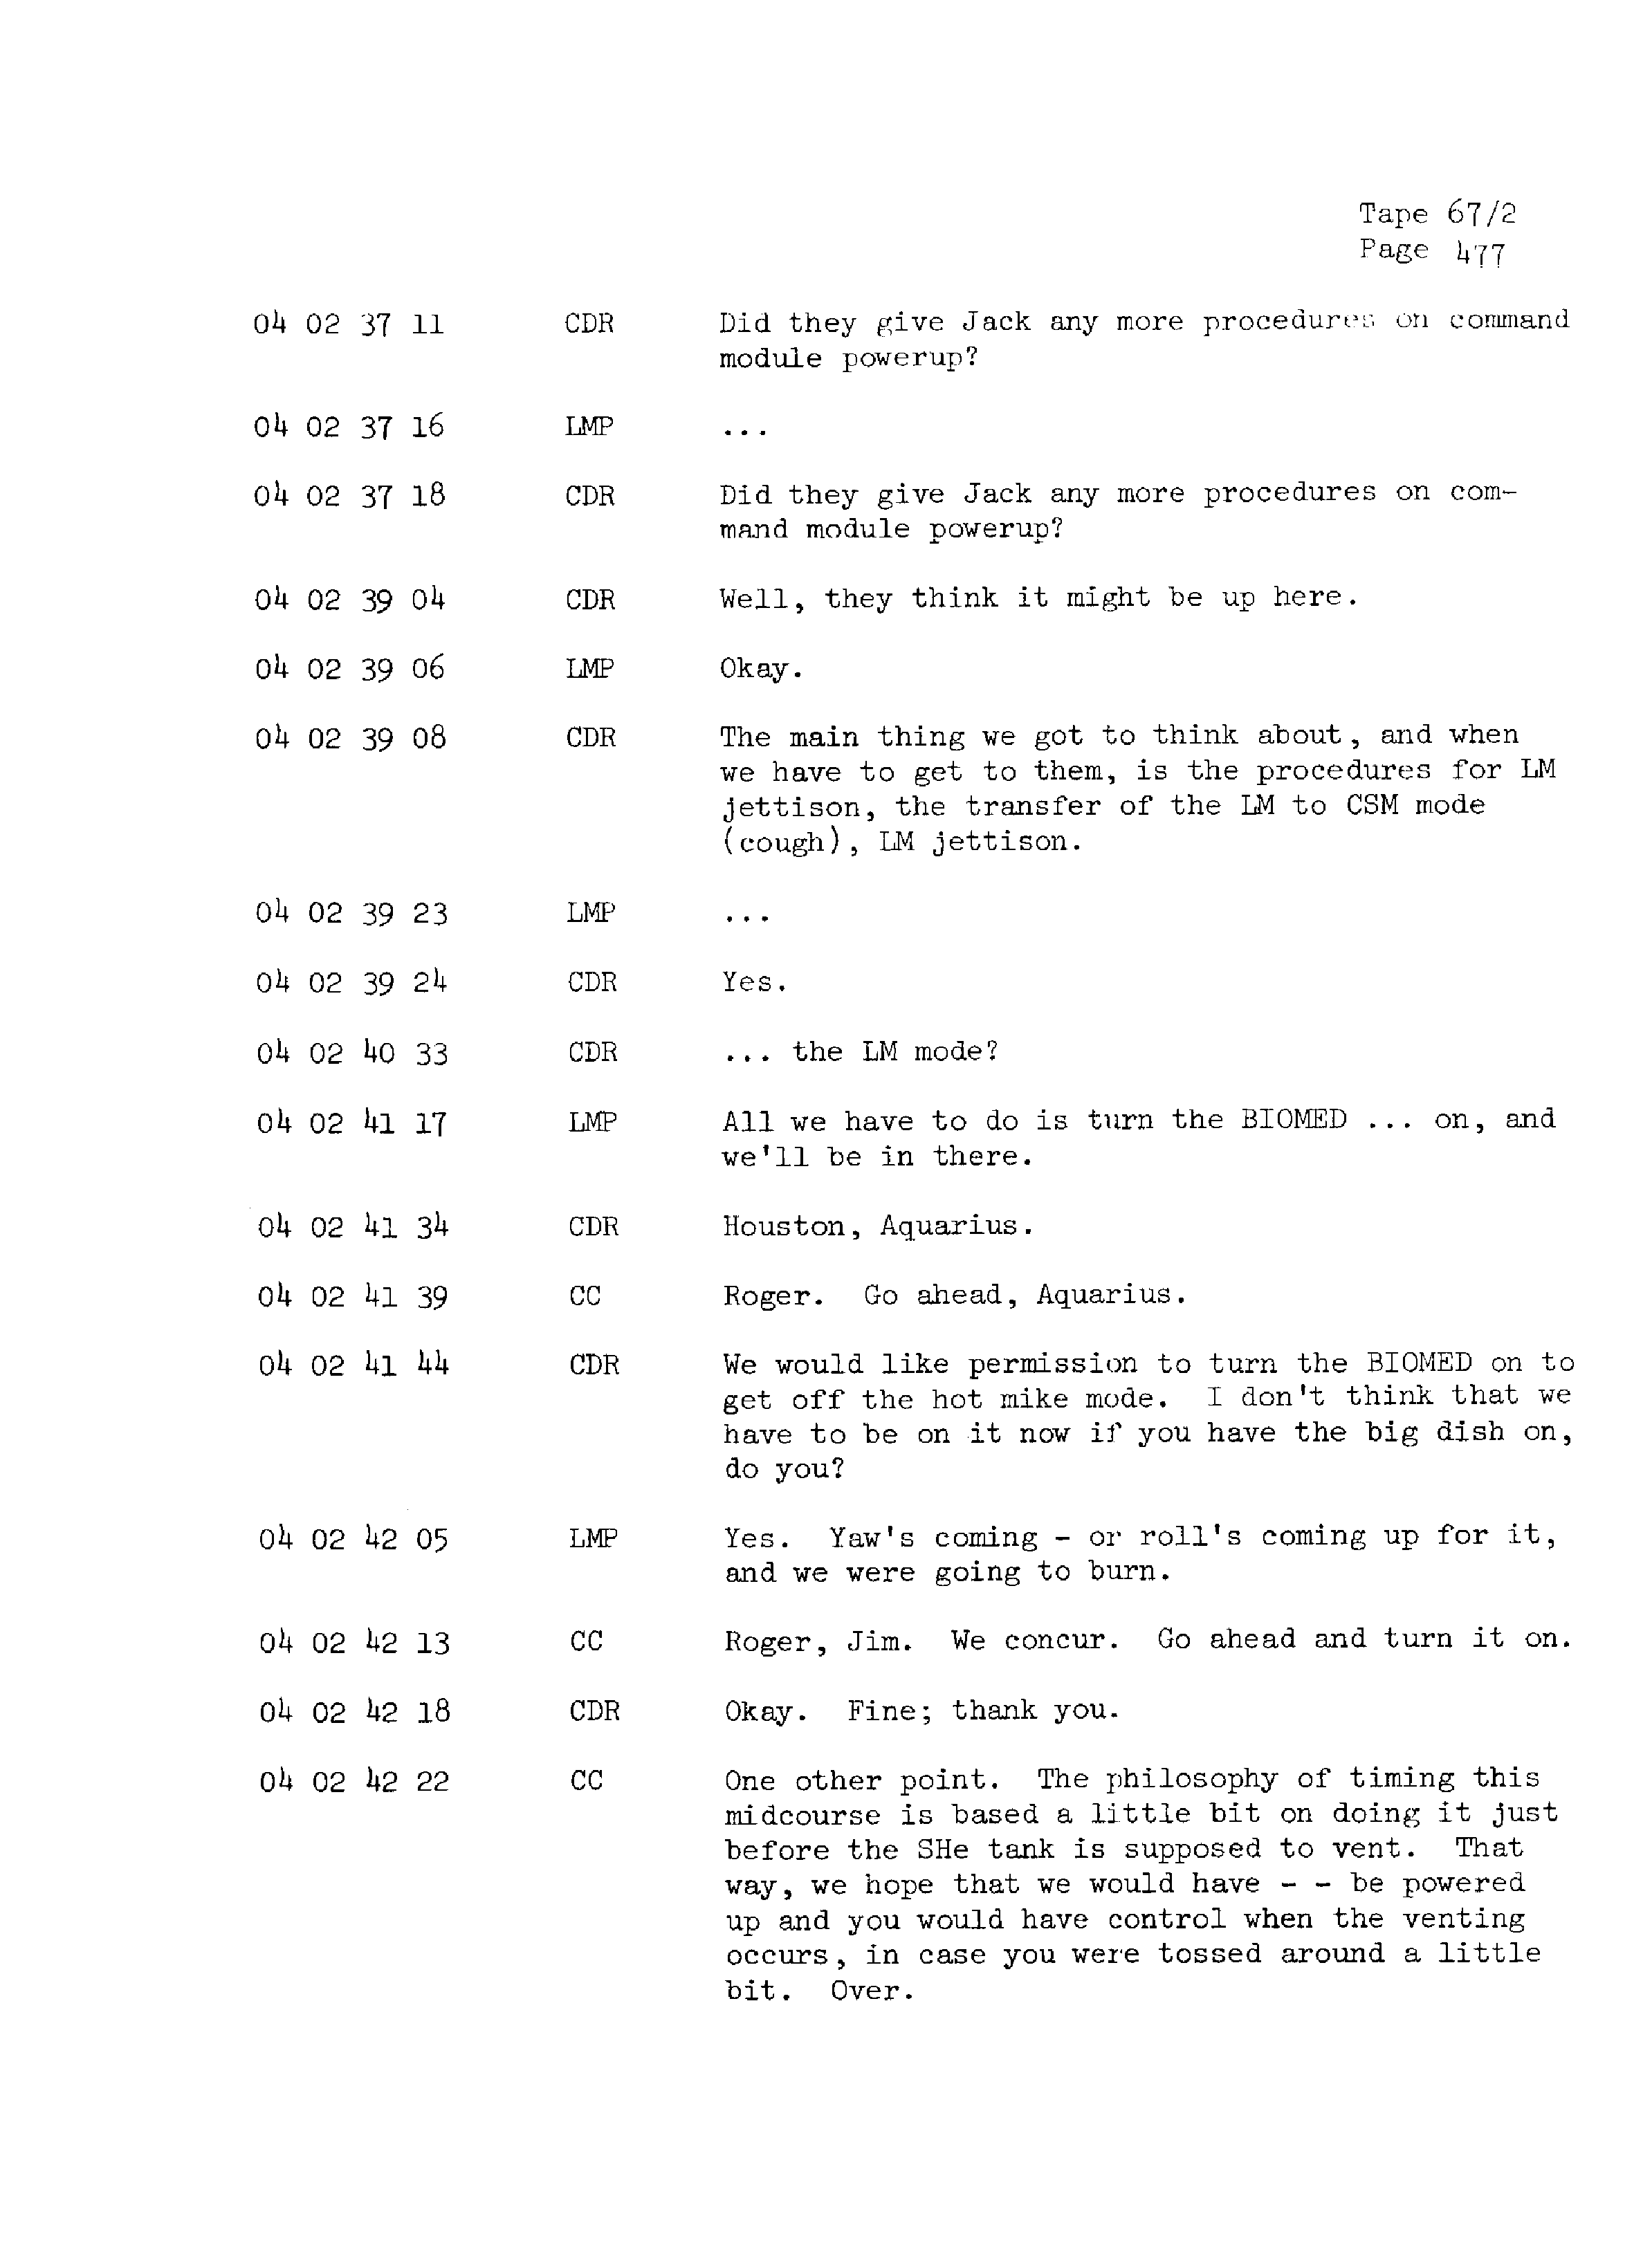 Page 484 of Apollo 13’s original transcript